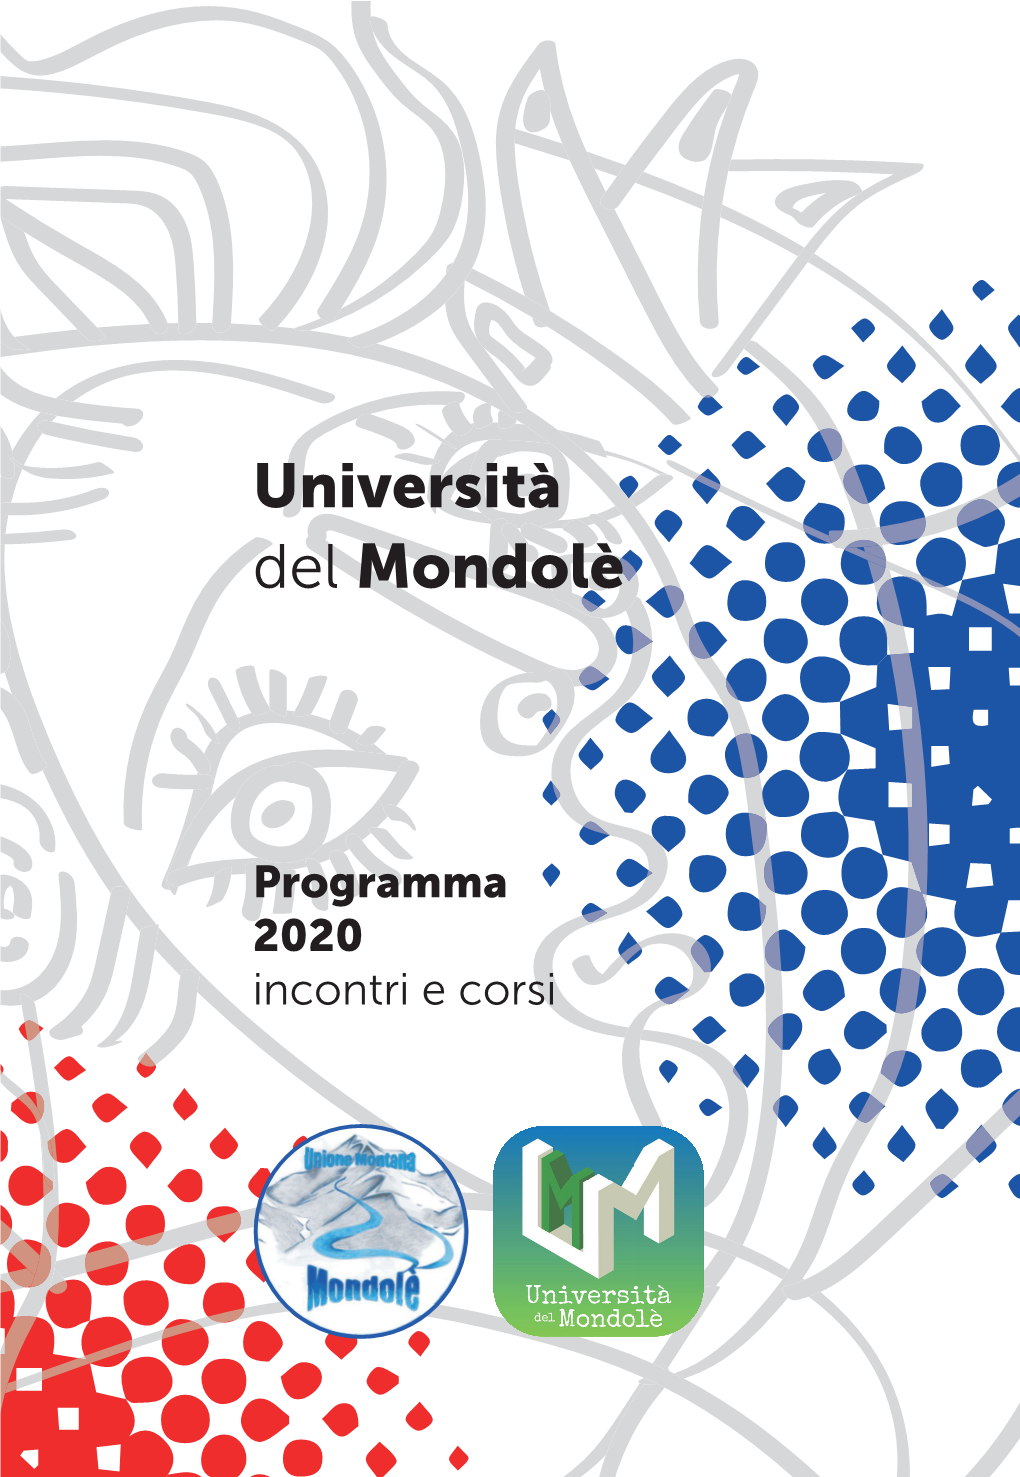 Università Del Mondolè